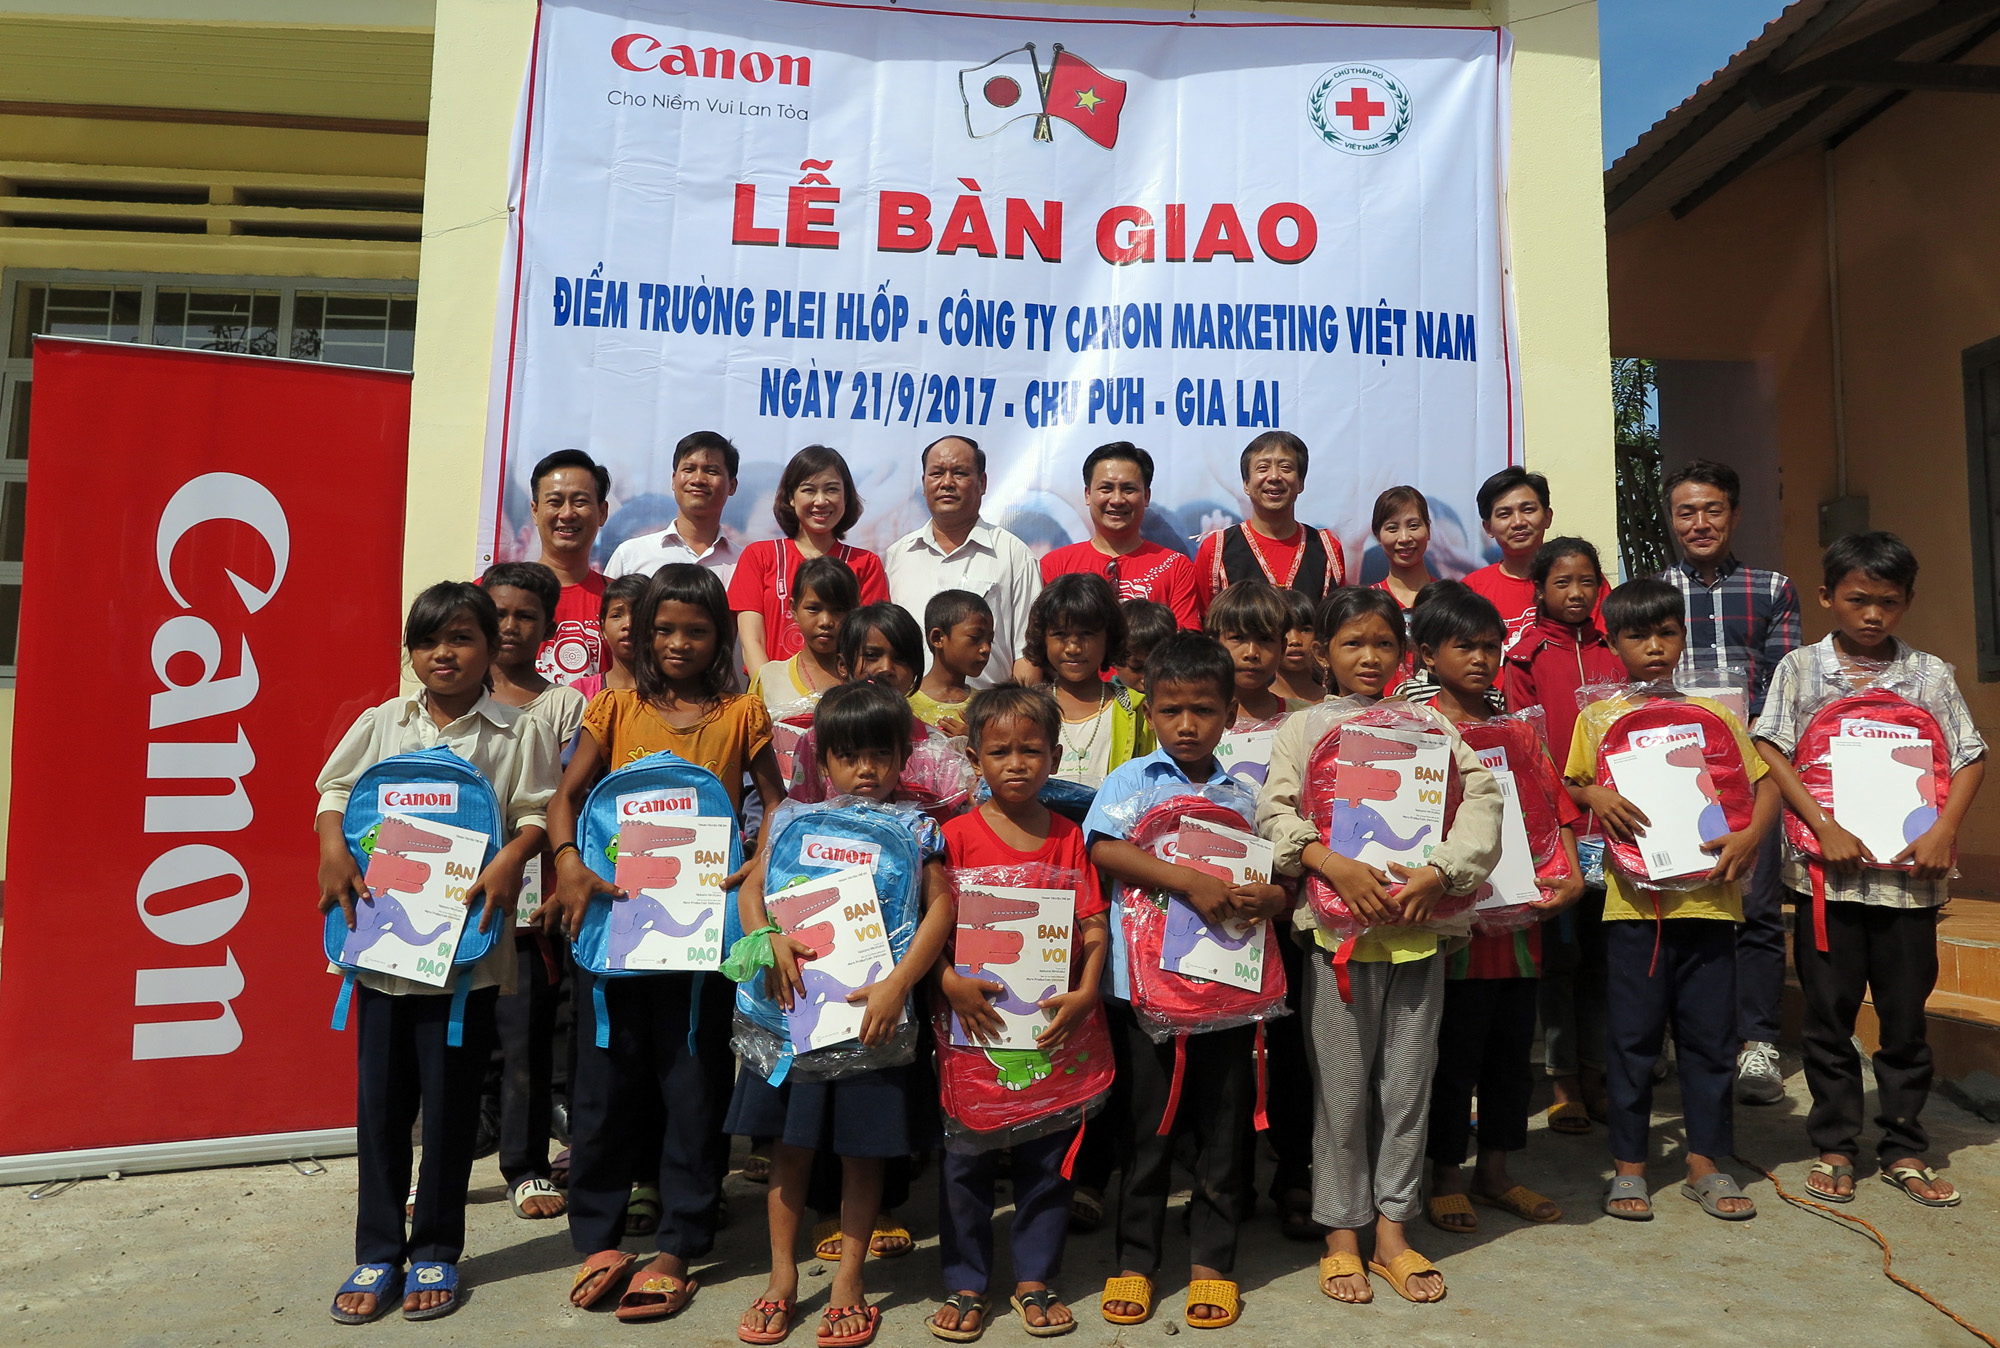 Hàng ngàn học sinh đã có nơi học khang trang với 57 ngôi trường Canon xây tại Việt Nam